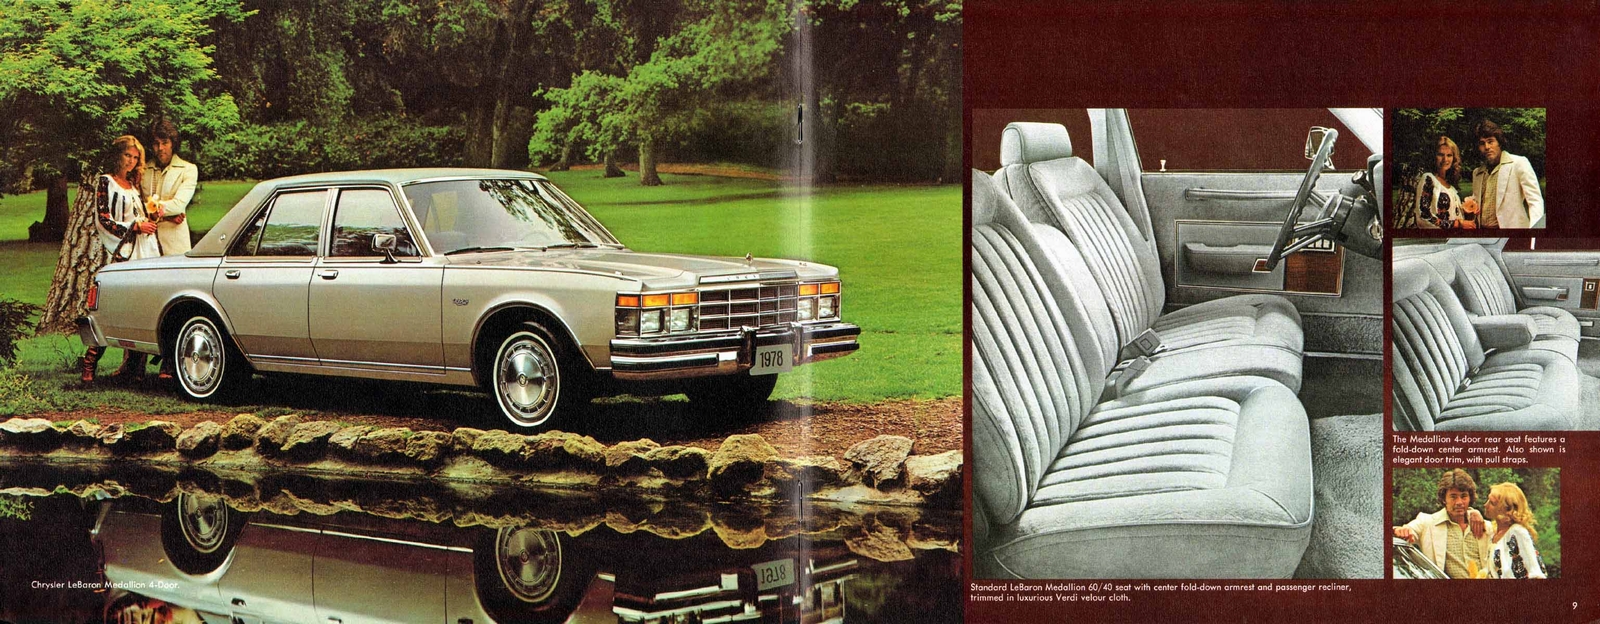 n_1978 Chrysler LeBaron-08-09.jpg